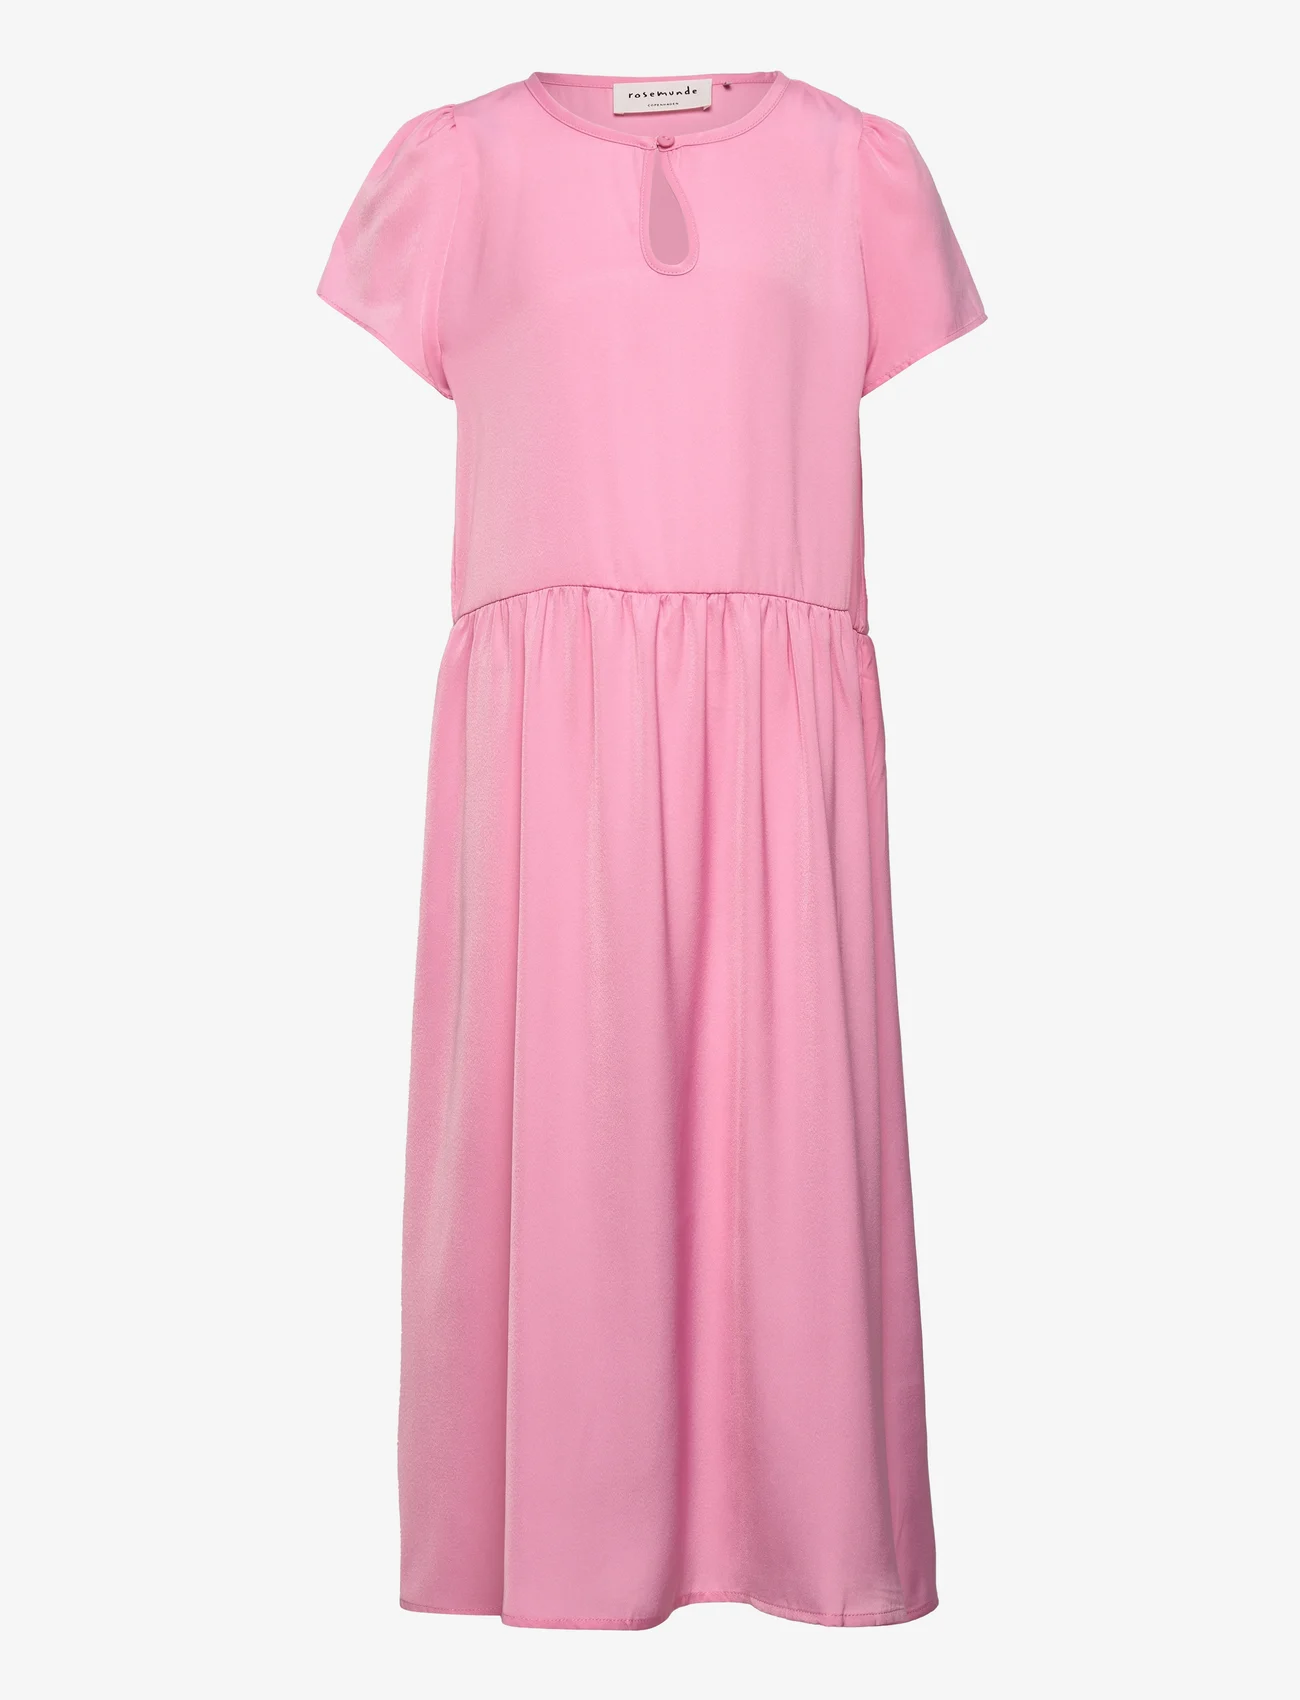 Rosemunde Kids - Dress ss - kurzärmelige freizeitkleider - bubblegum pink - 0